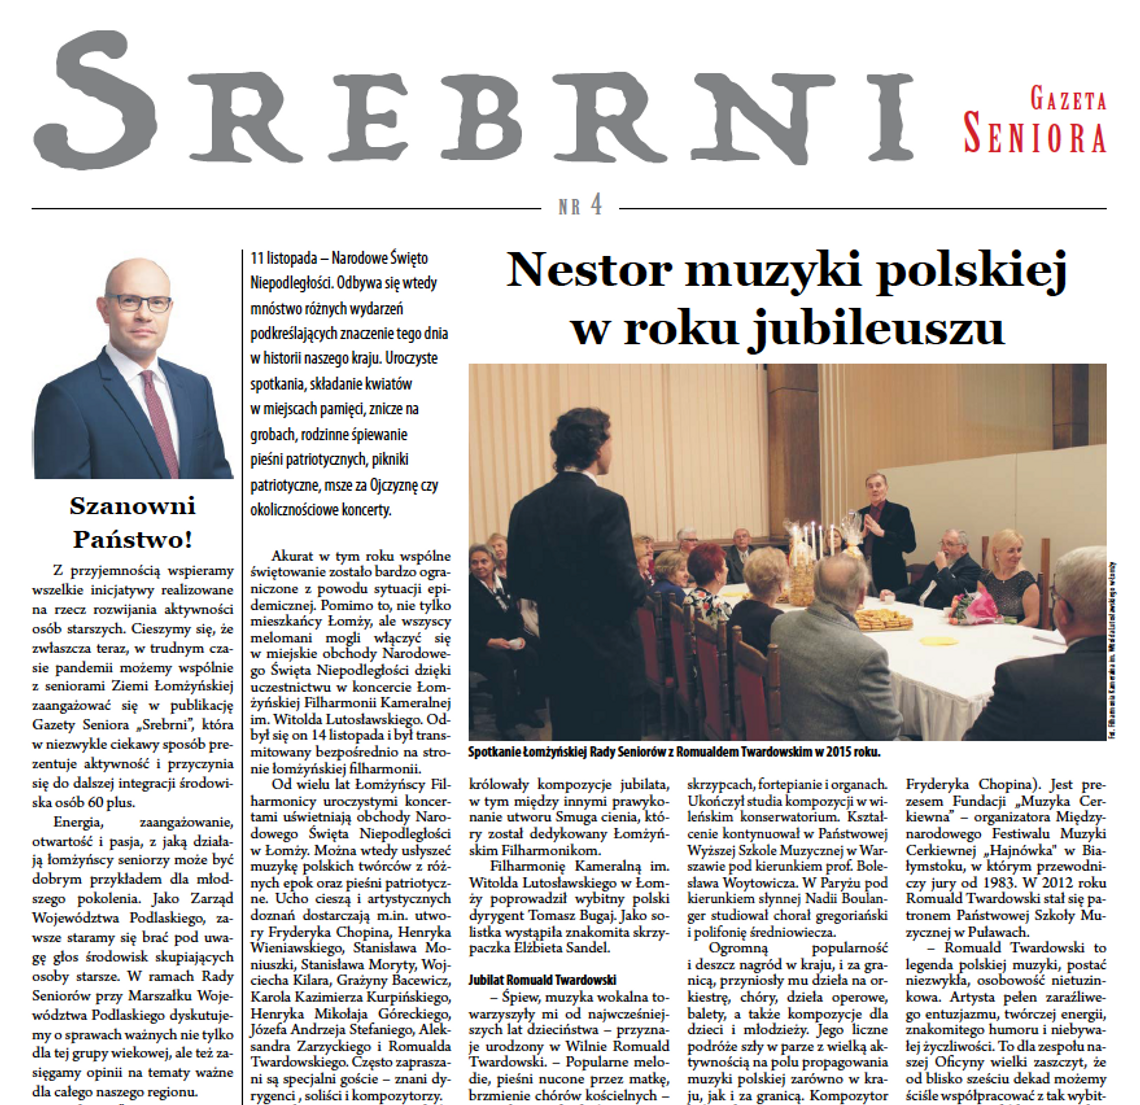 Gazeta Seniora "Srebrni" - Wydanie 4 